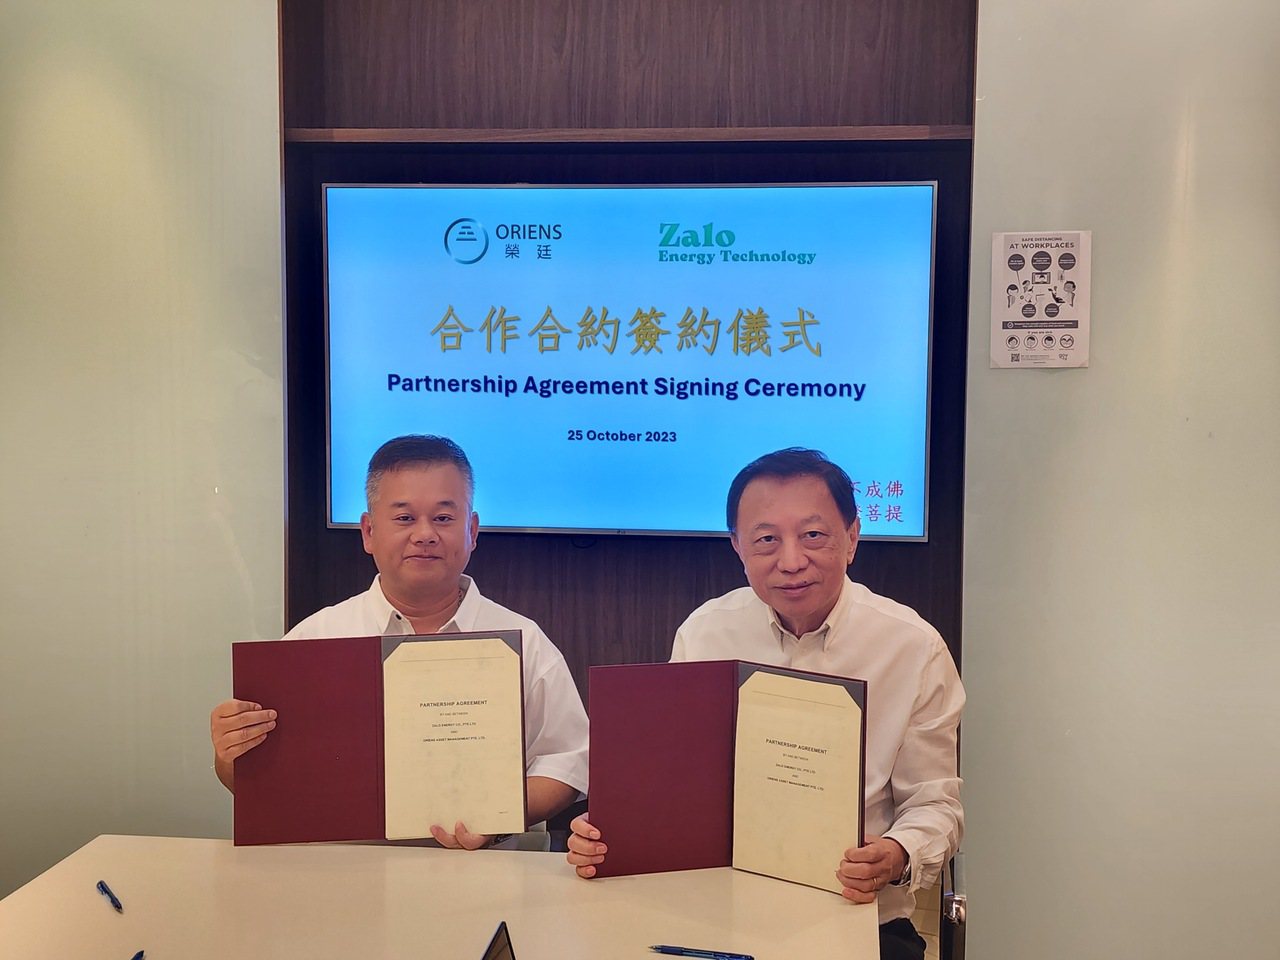  寰宇能源宣布取得熱裂解技術與新加坡榮廷資產簽訂合作合約，預定投資20億美金興建熱裂解廠。
